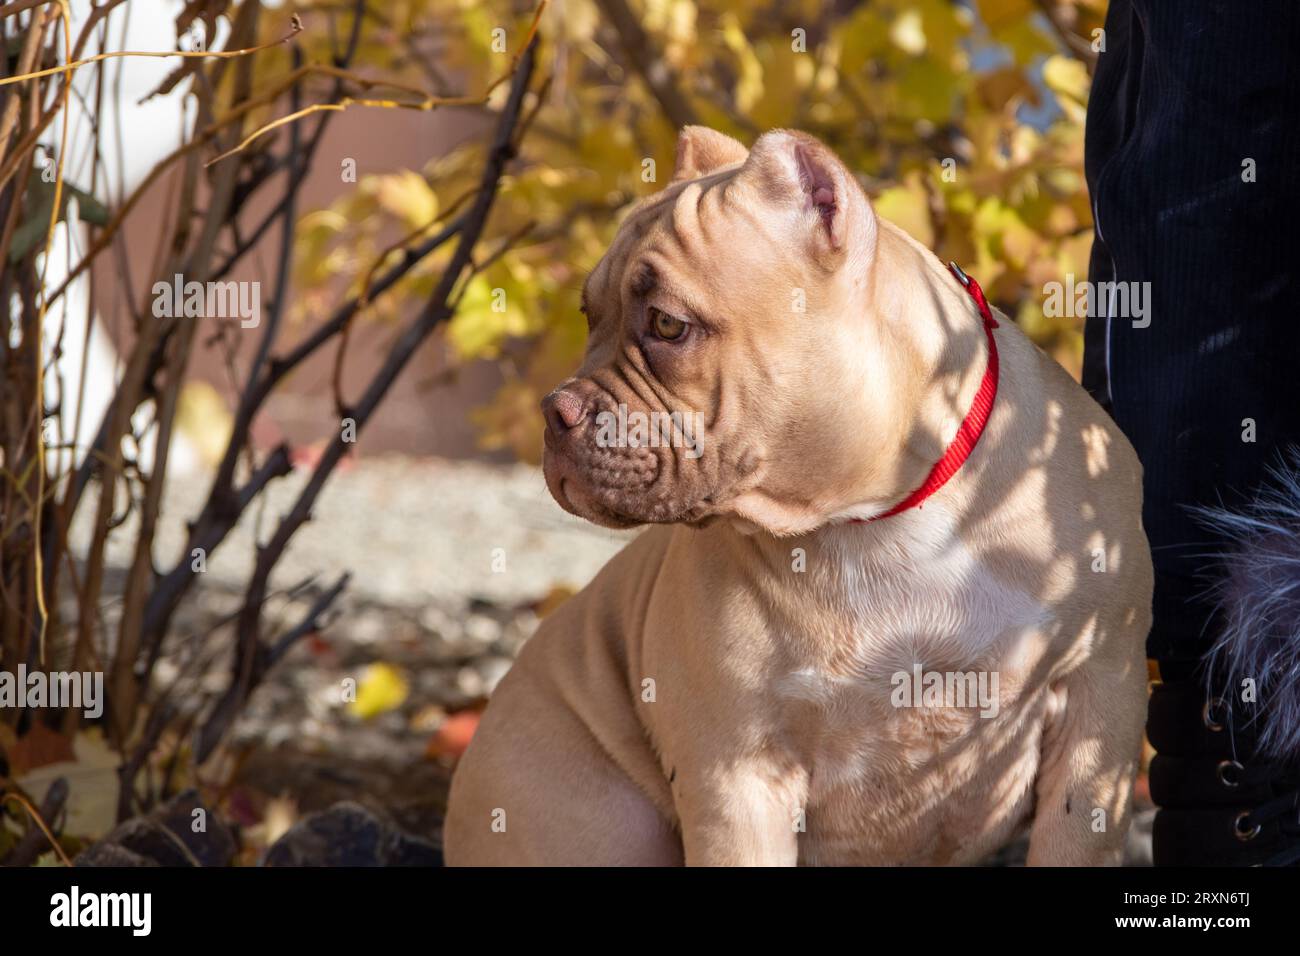 Ritratto di un cucciolo bullo americano seduto accanto al proprietario, allevatore, gestore. Passeggiata autunnale con un cane per strada. Addestramento all'obbedienza del cane. Foto Stock